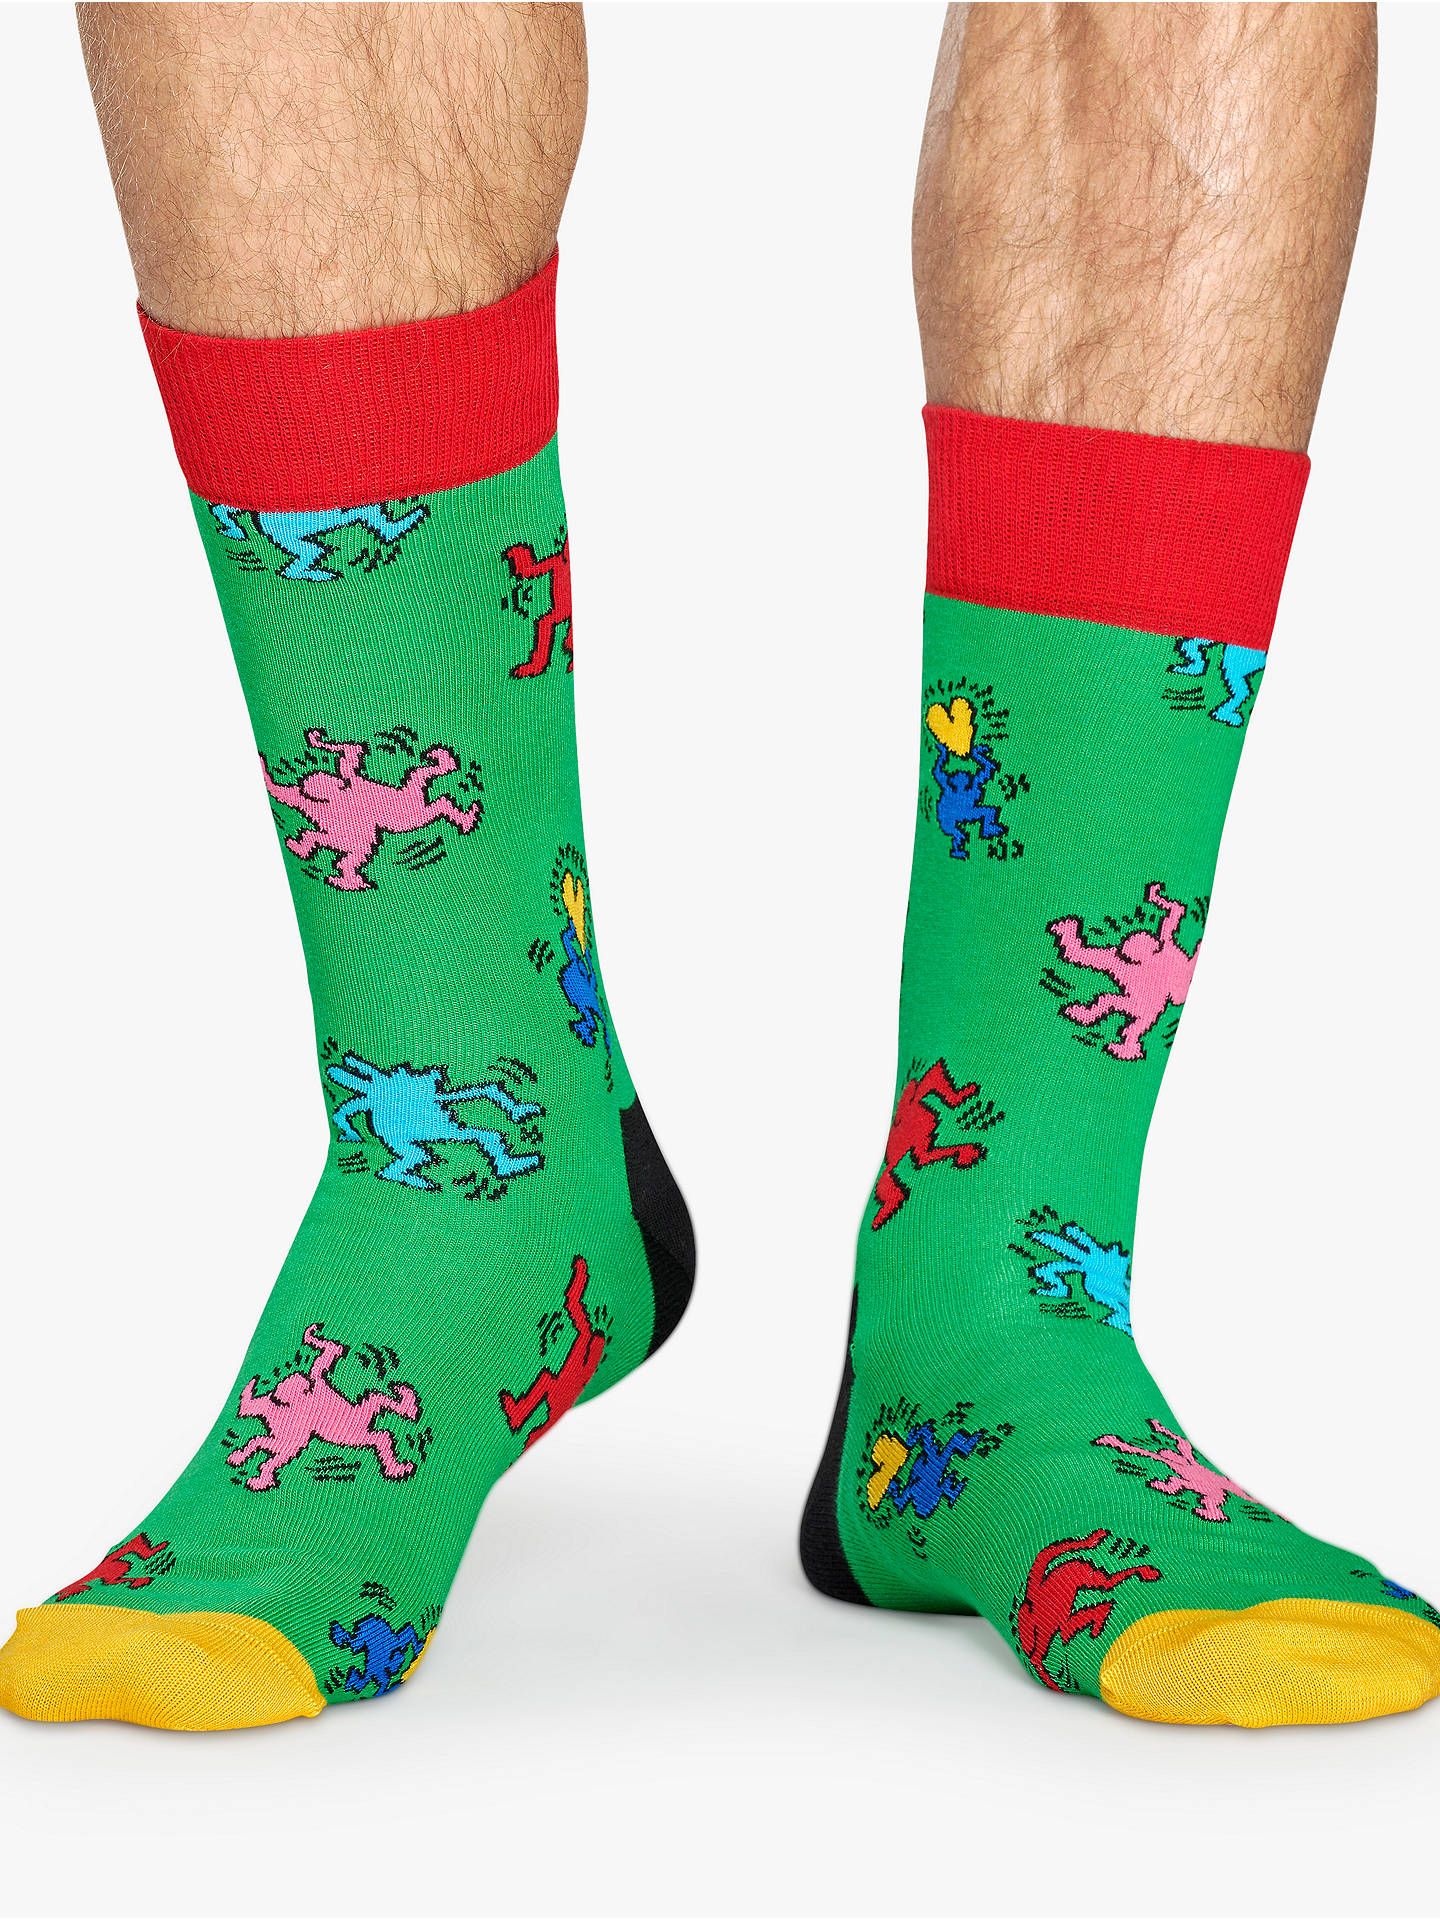 Happy Socks Keith Haring Dancing Man Socks, One Size, Green at John ...